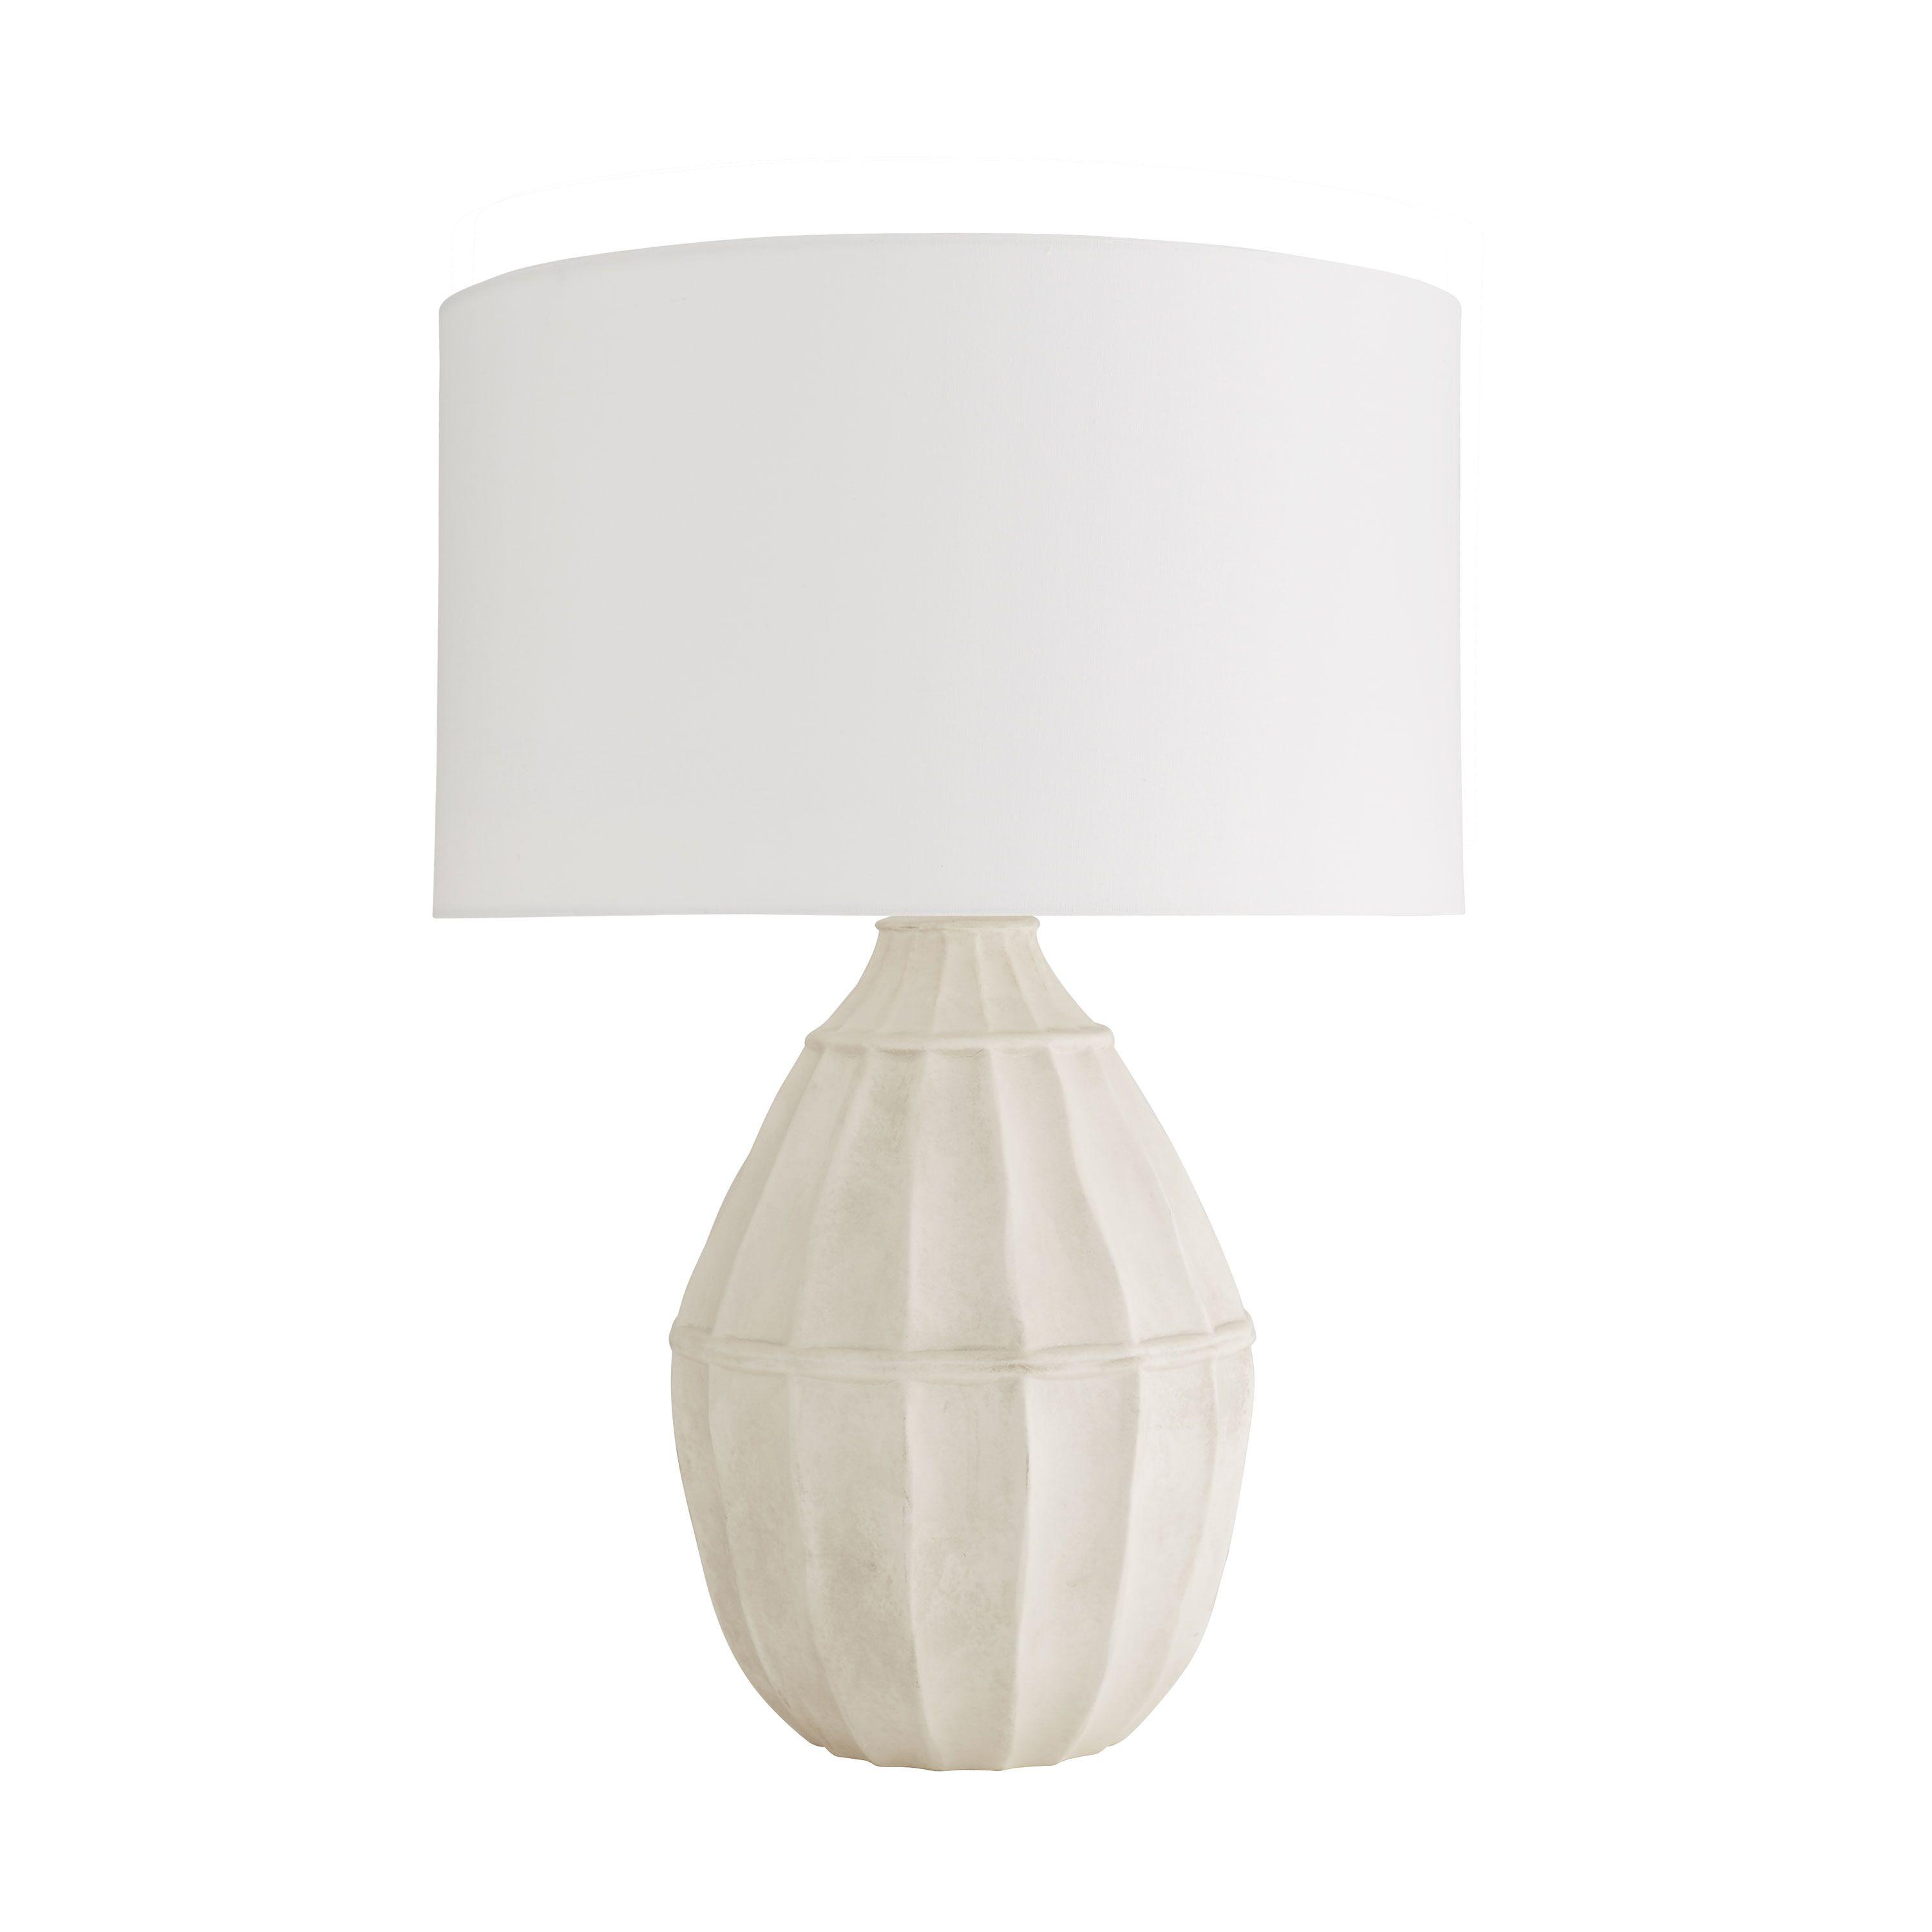 Купить Настольная лампа Tangier Lamp в интернет-магазине roooms.ru